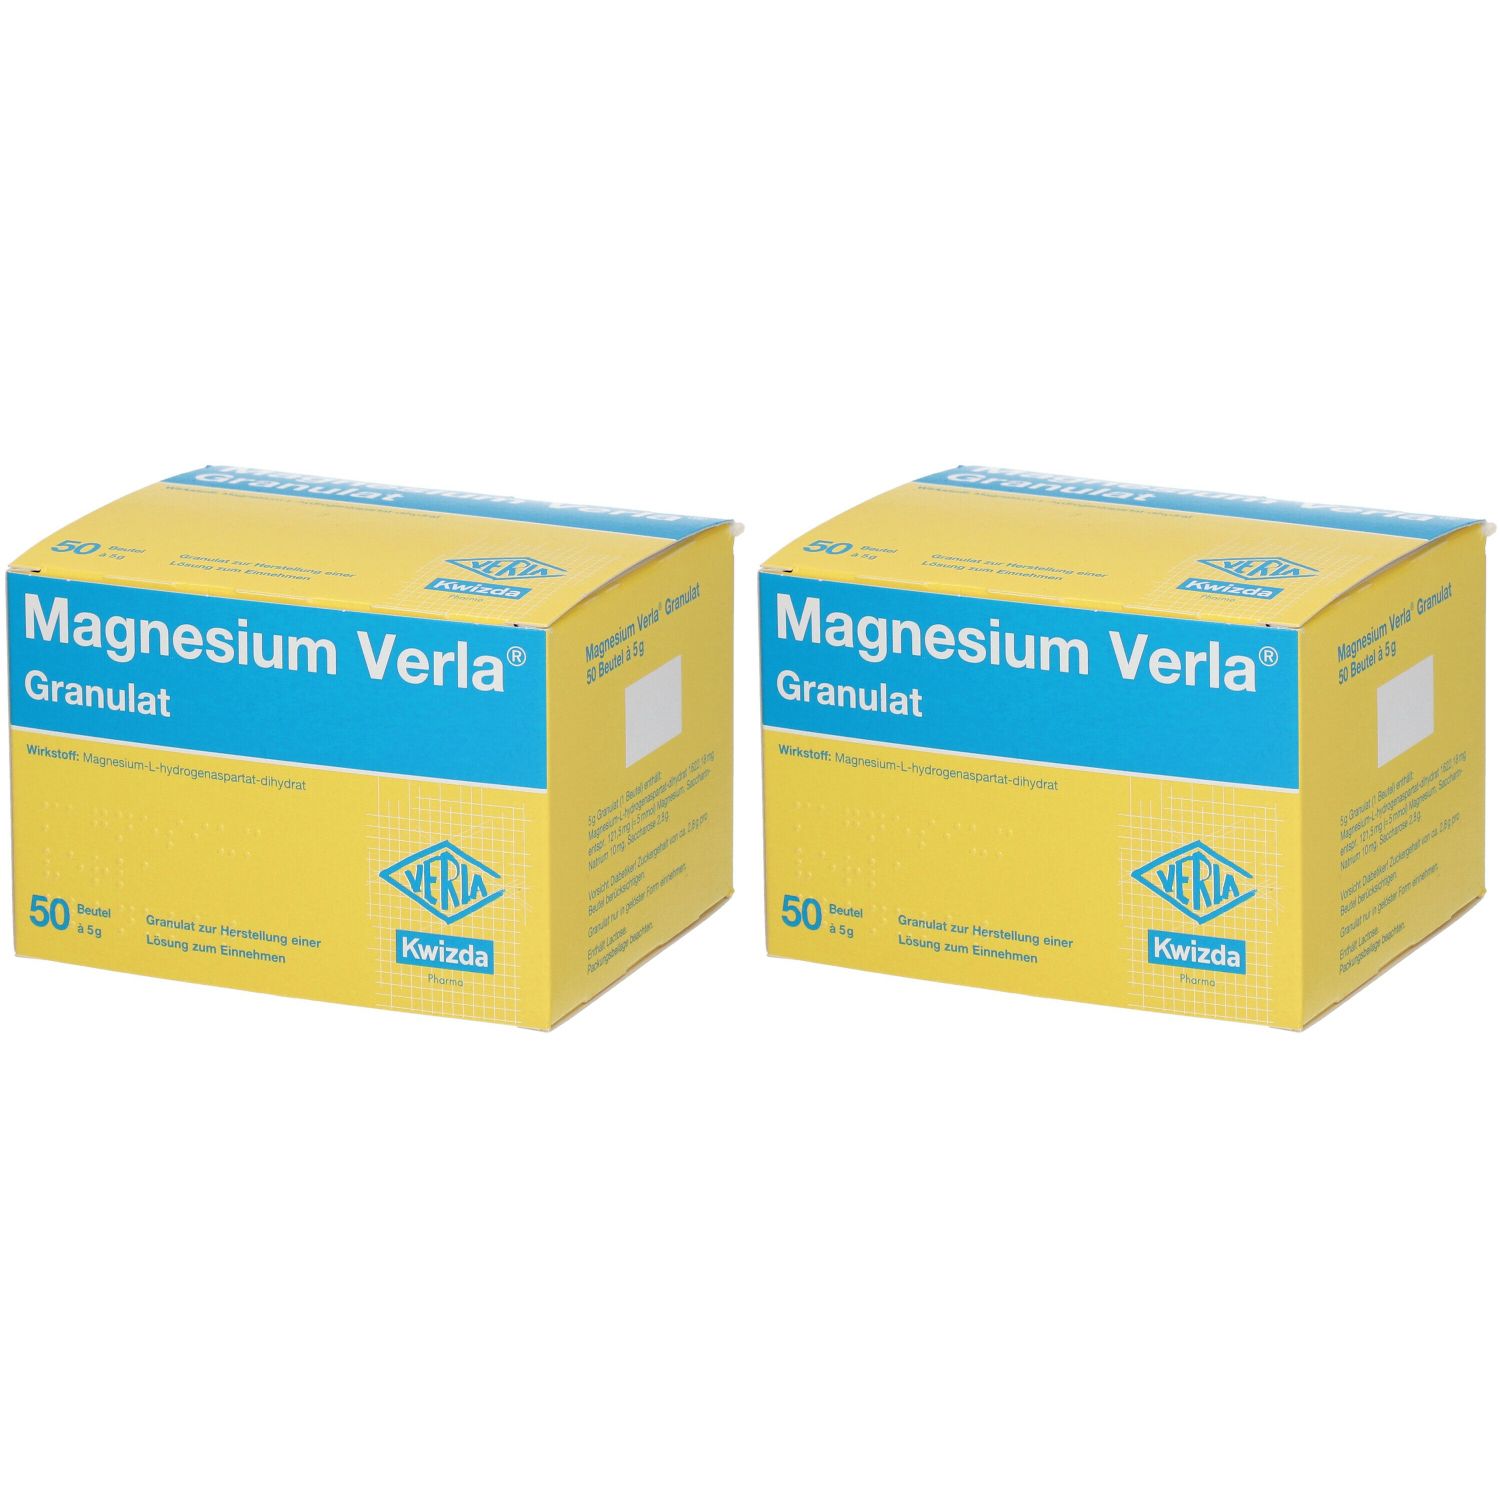 Magnesium Verla® Granulat